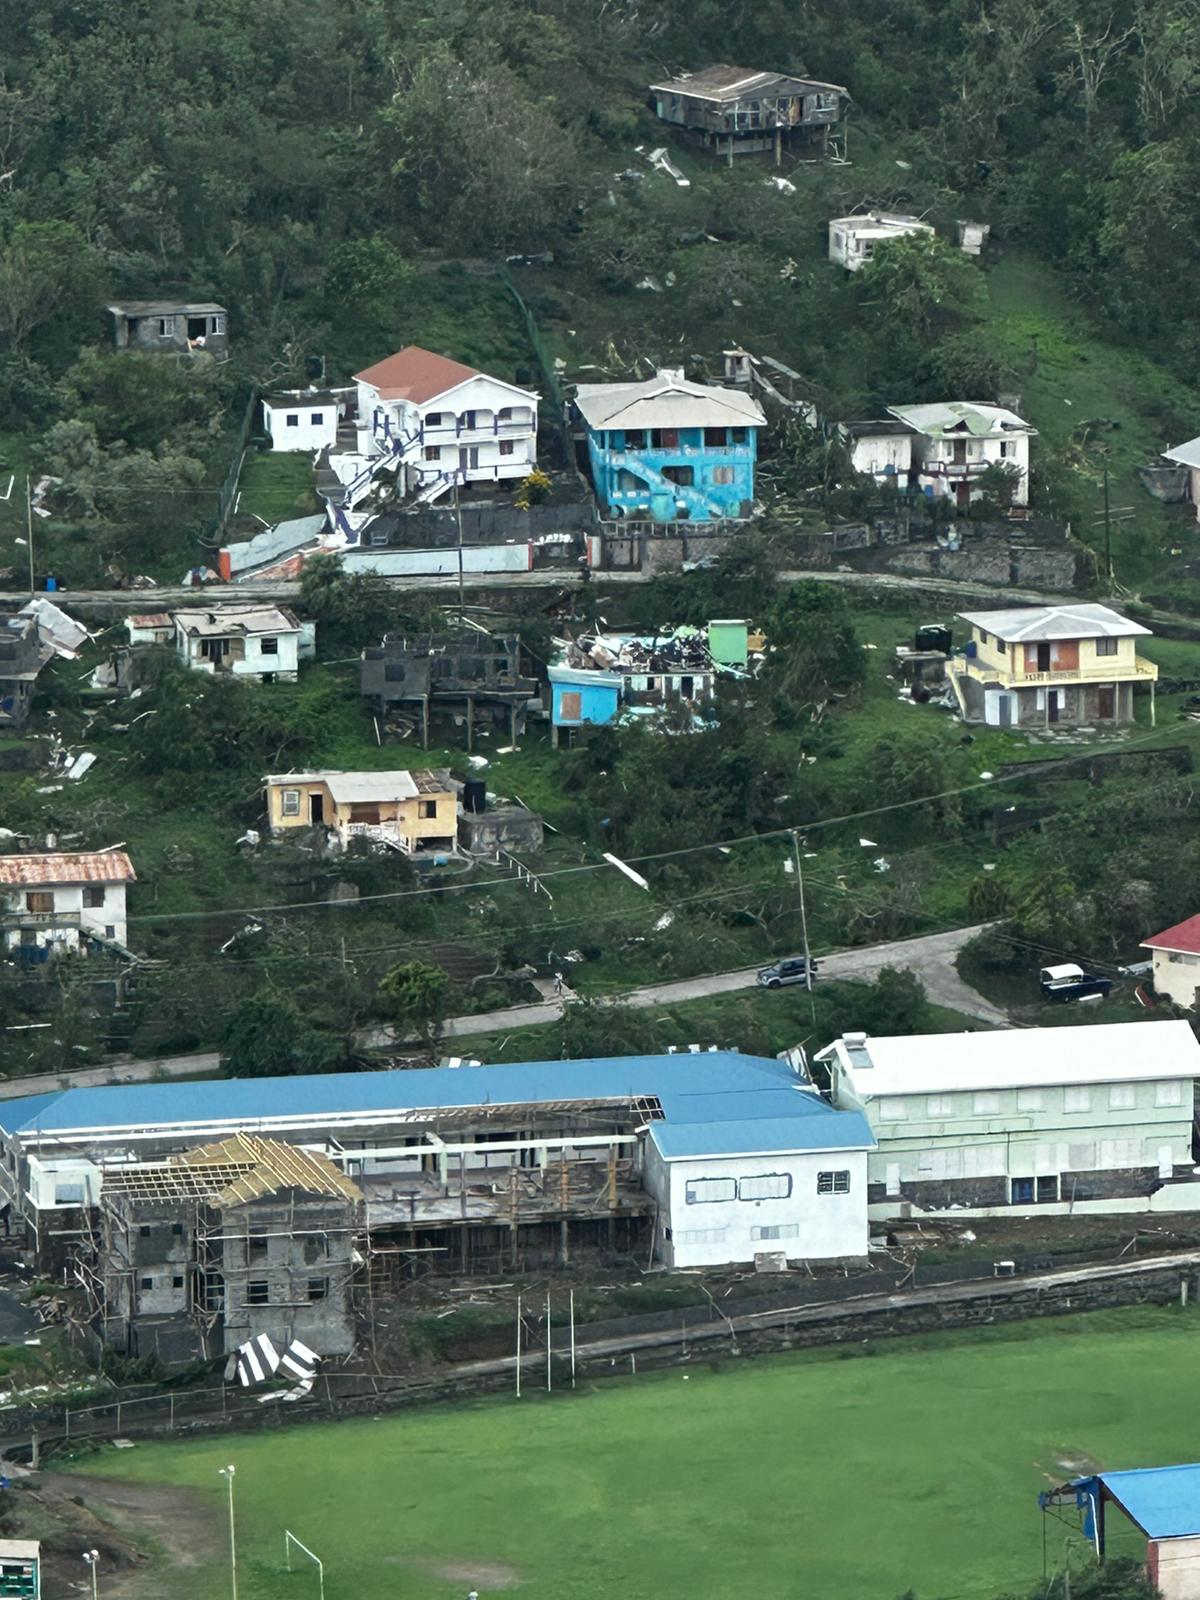 Huragan Beryl zniszczył kilka domów na wyspie Bequia, na zdjęciu